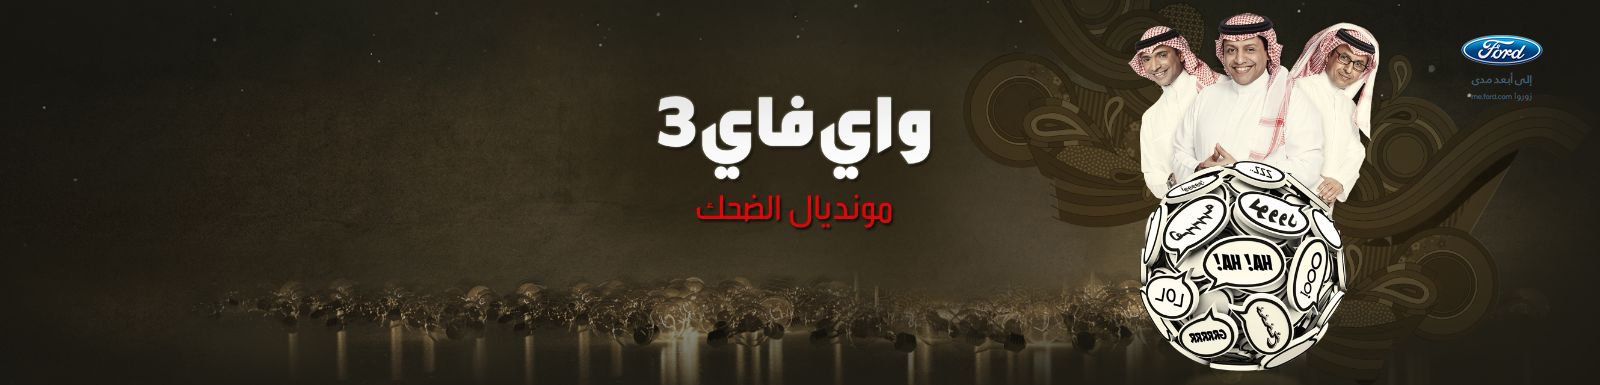 يوتيوب تقليد رئيس النادي المدرب المصري واي فاي 3